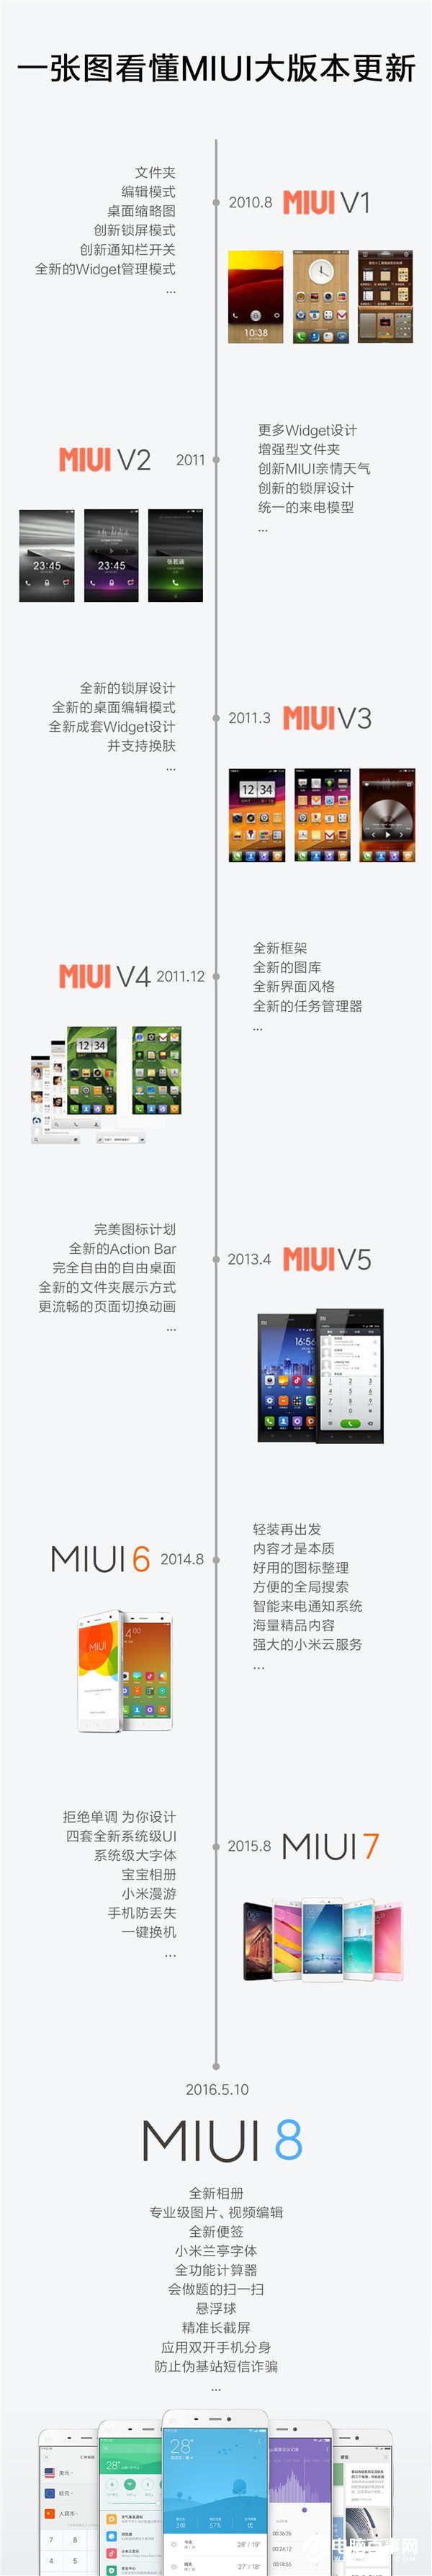 从MIUI V1到MIUI8 一张图看懂MIUI大版本更新